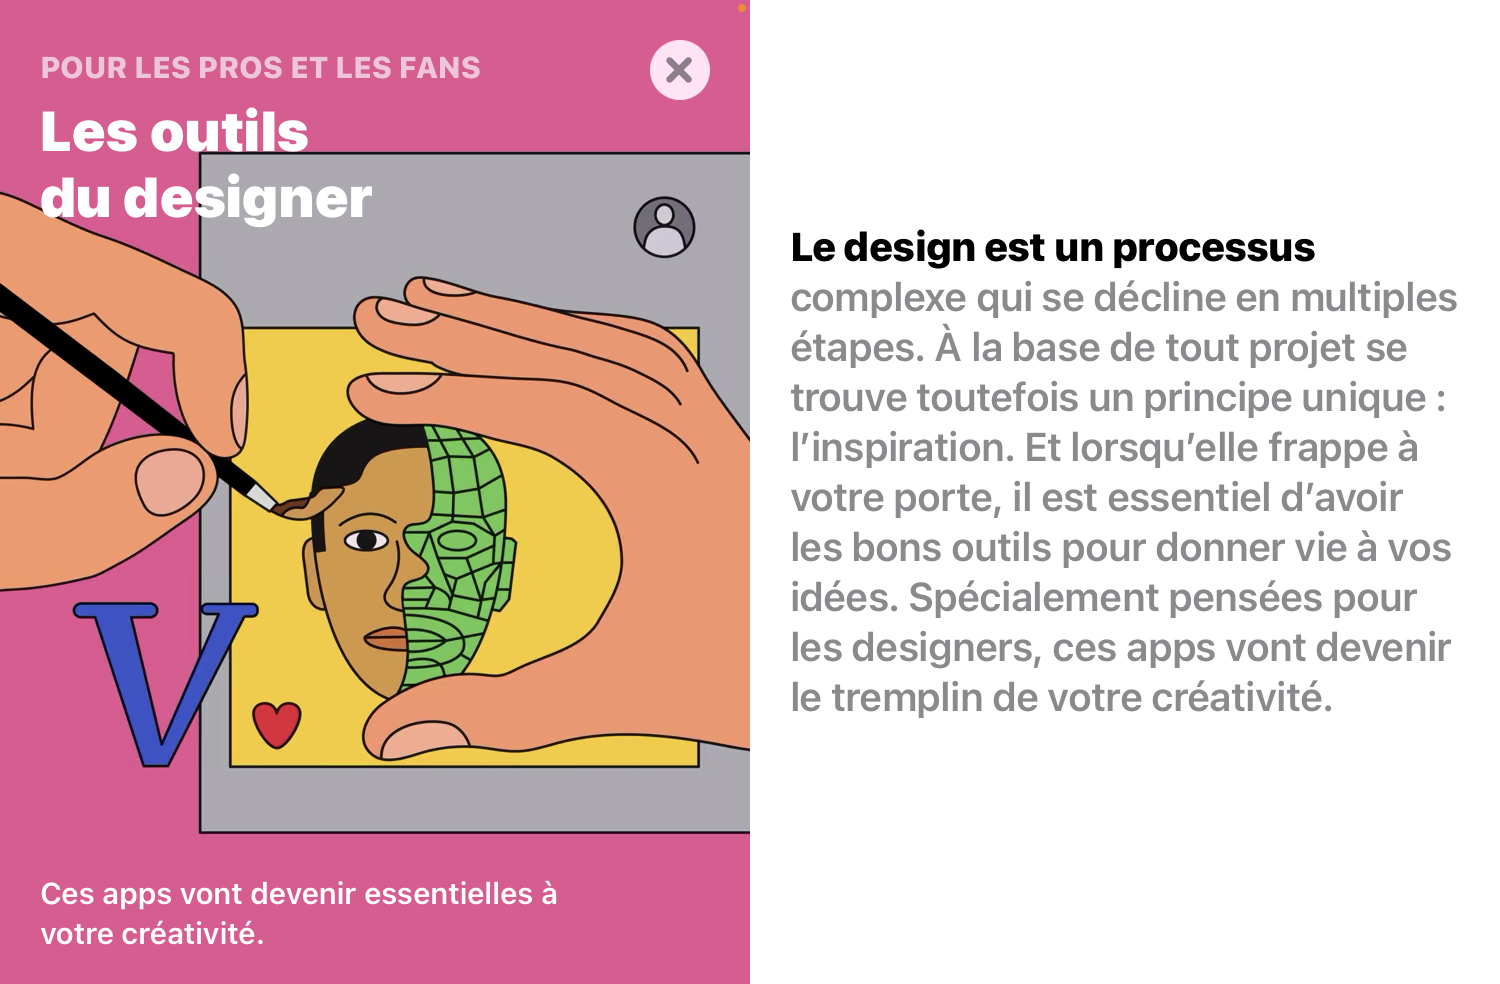 Article d'apple, vu le 6 mars 2022. "Les outils du designer"